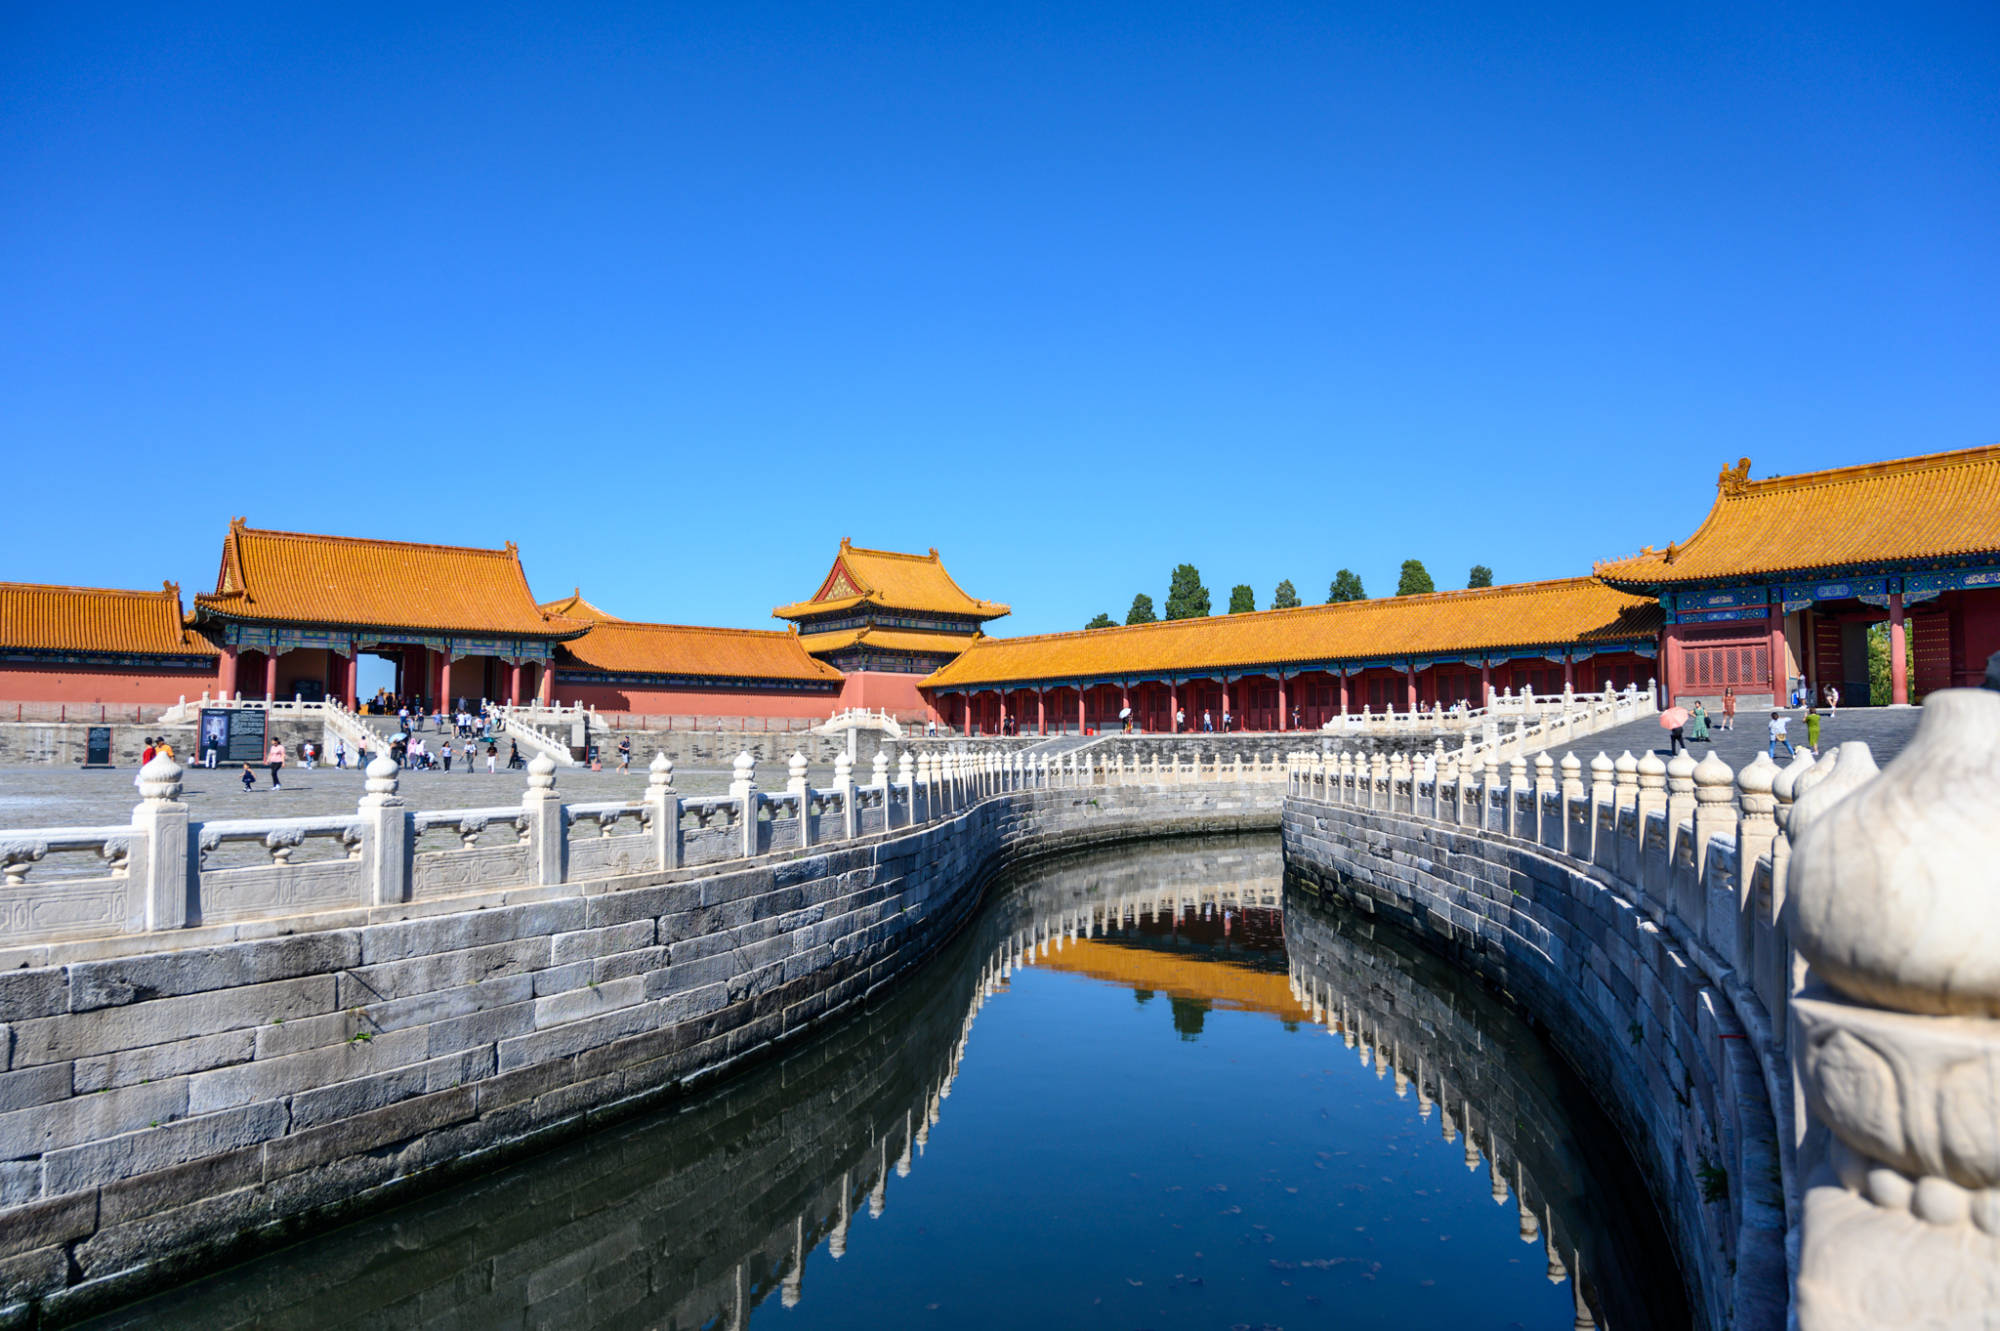 原创实拍北京故宫明清时期的皇家宫殿建筑宏伟处处尽显皇家风范